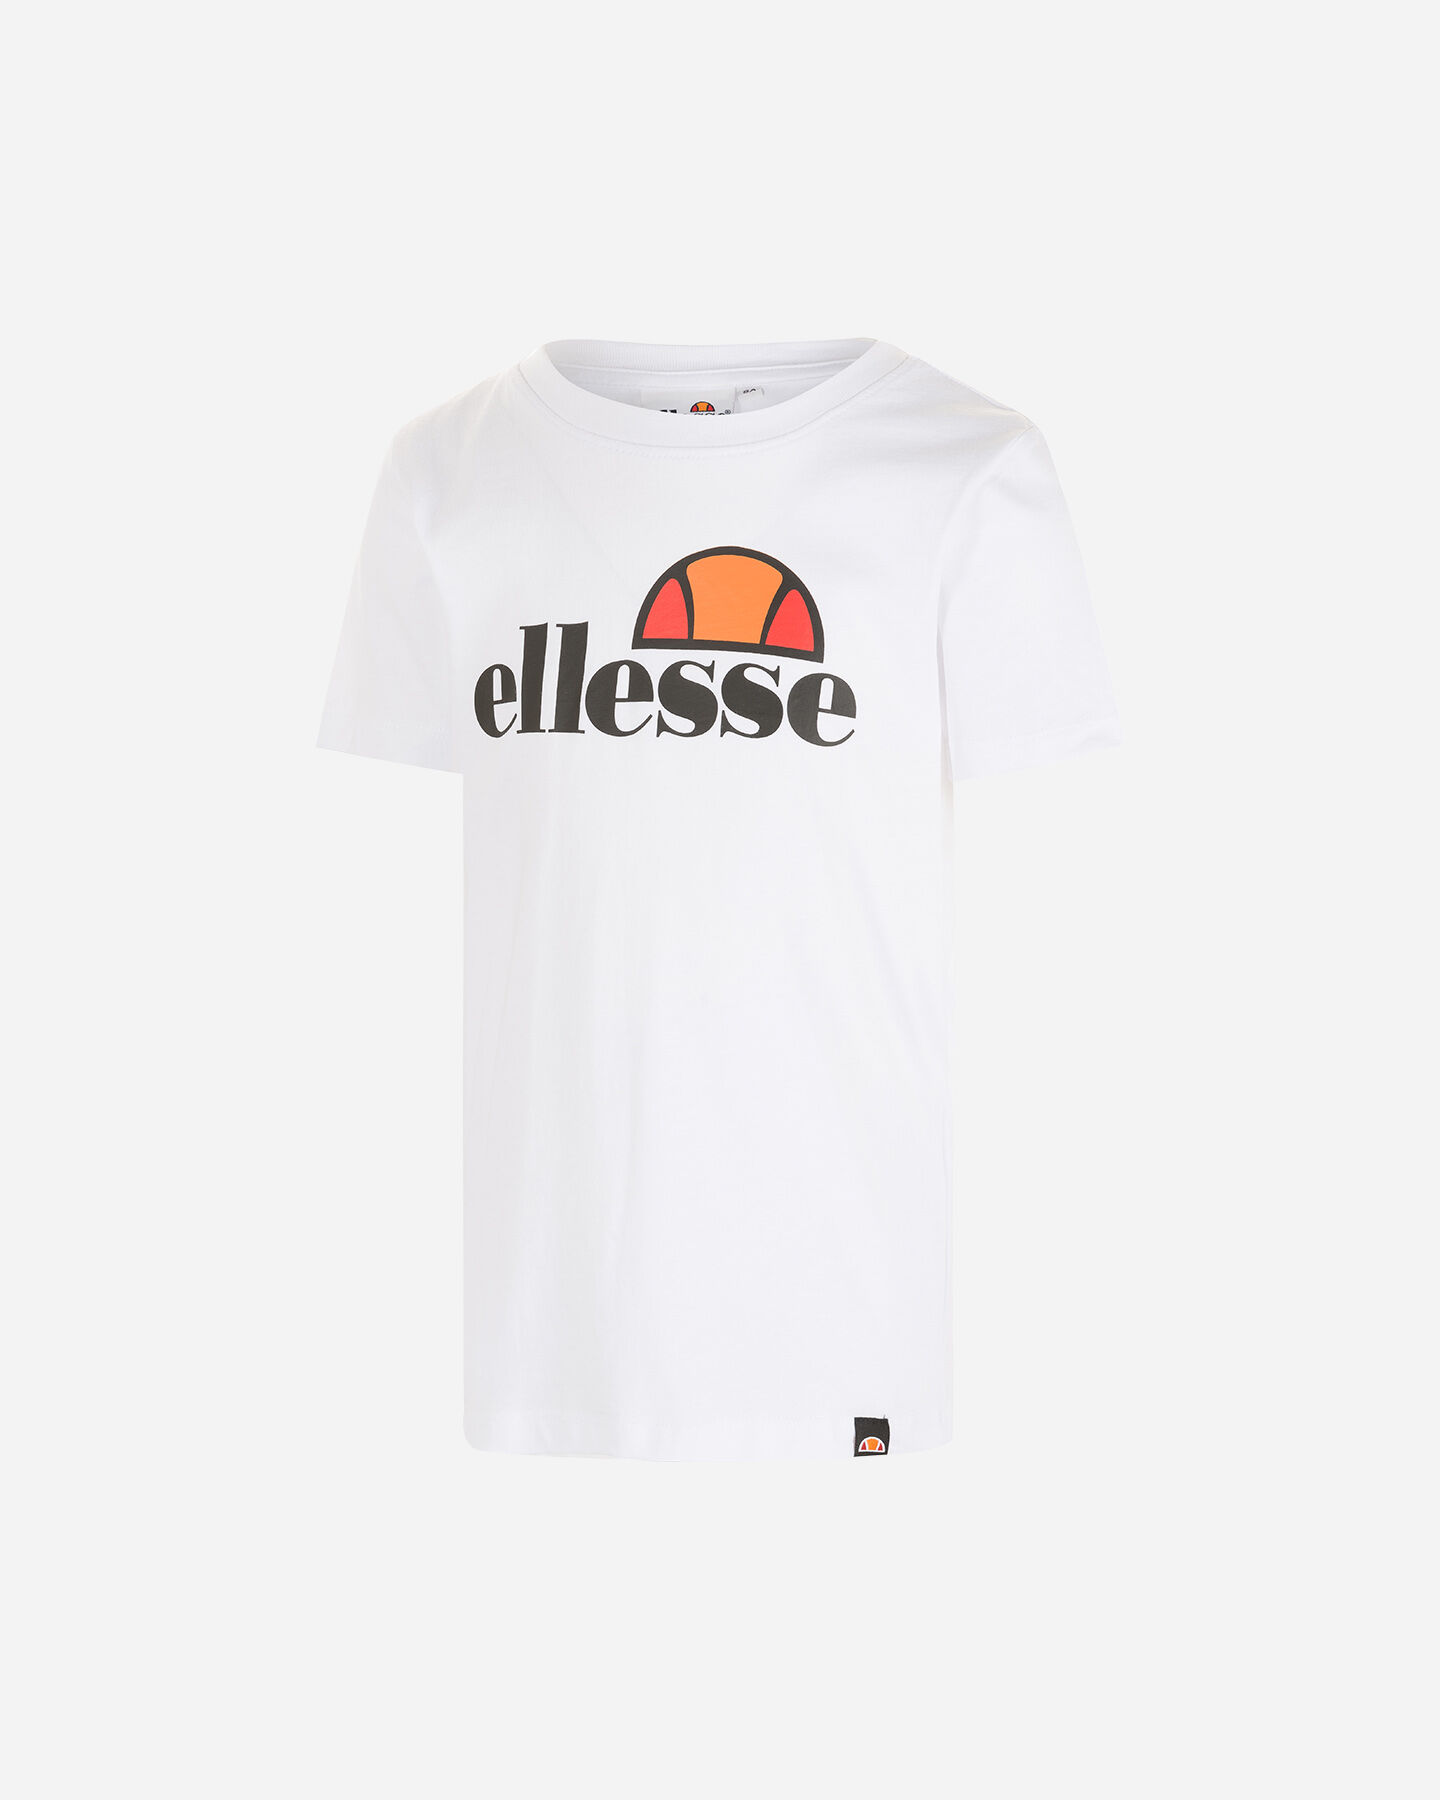  T-Shirt ELLESSE PLOGO JR S4094435|001|6A scatto 0